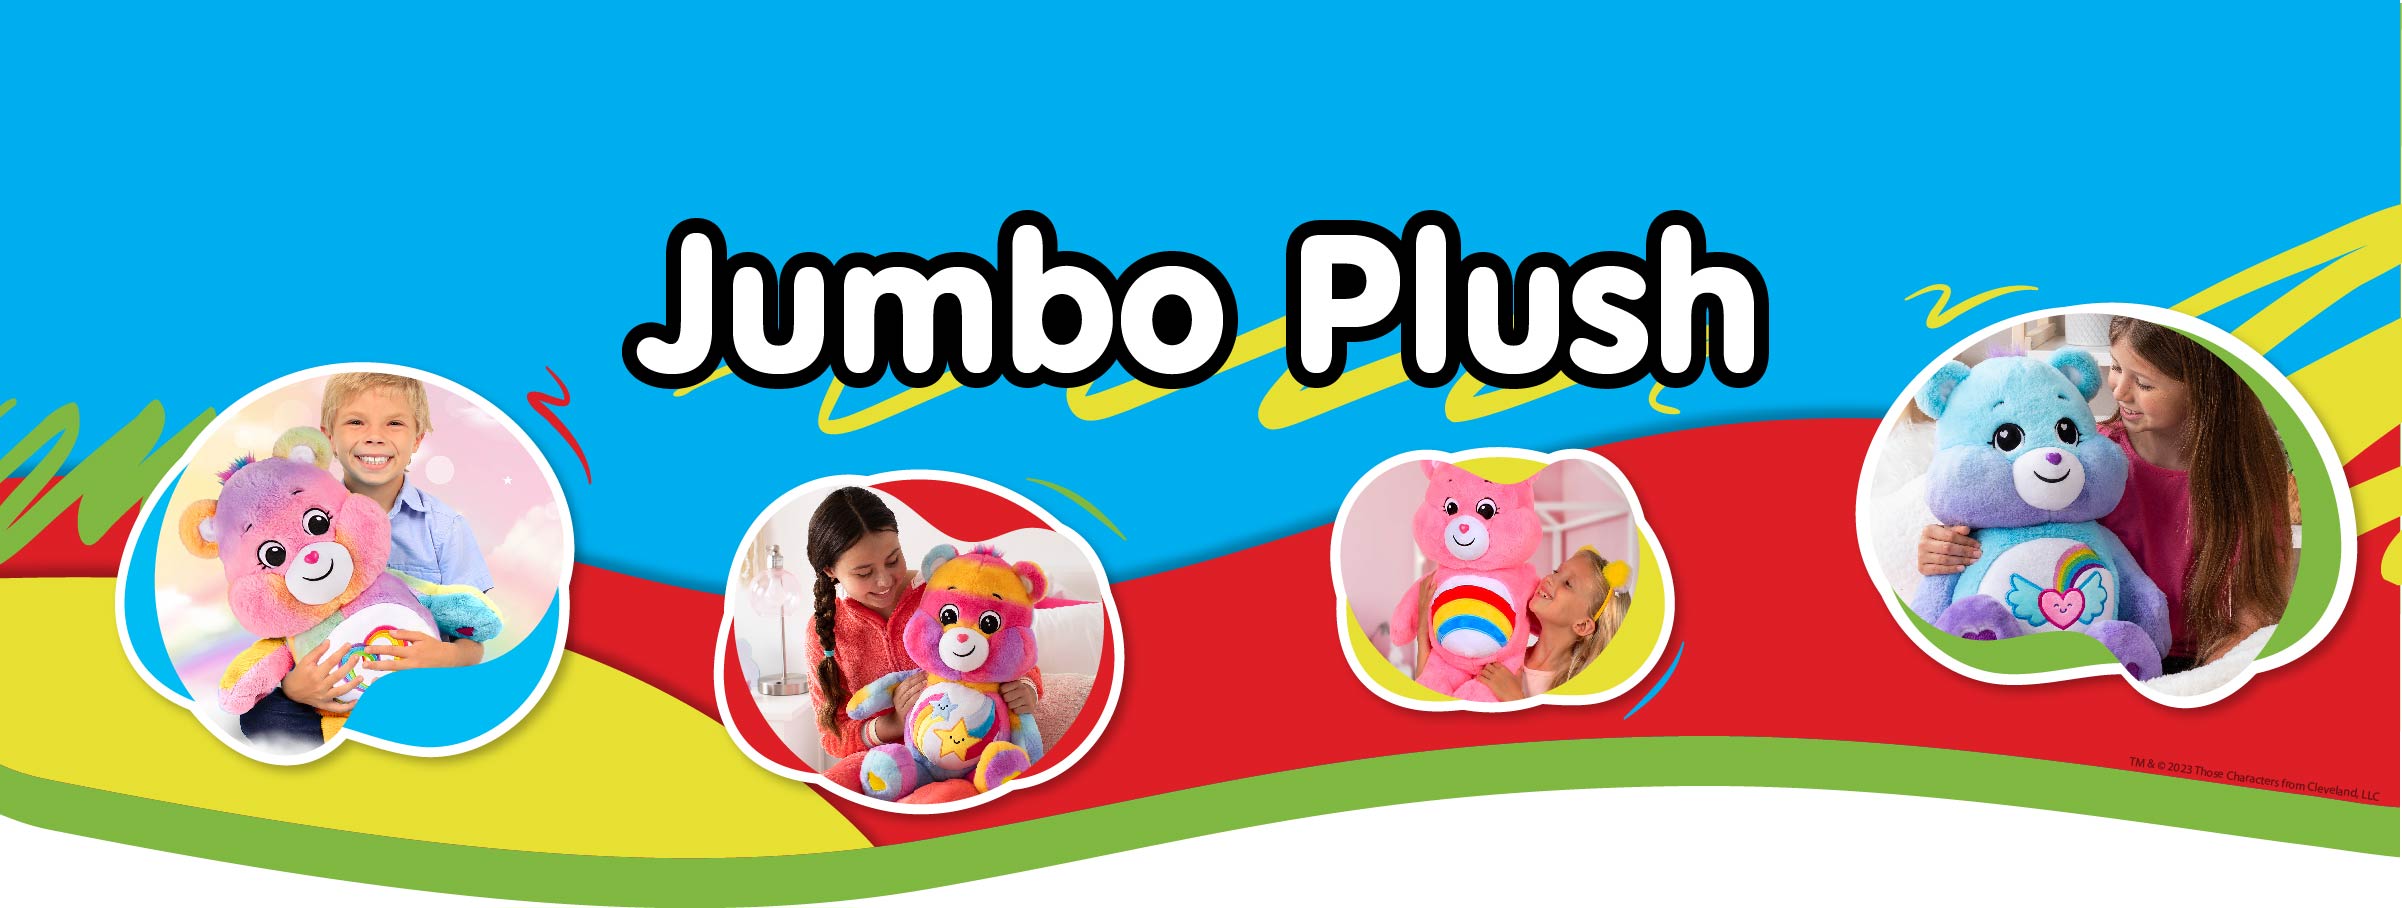 Jumbo Plush